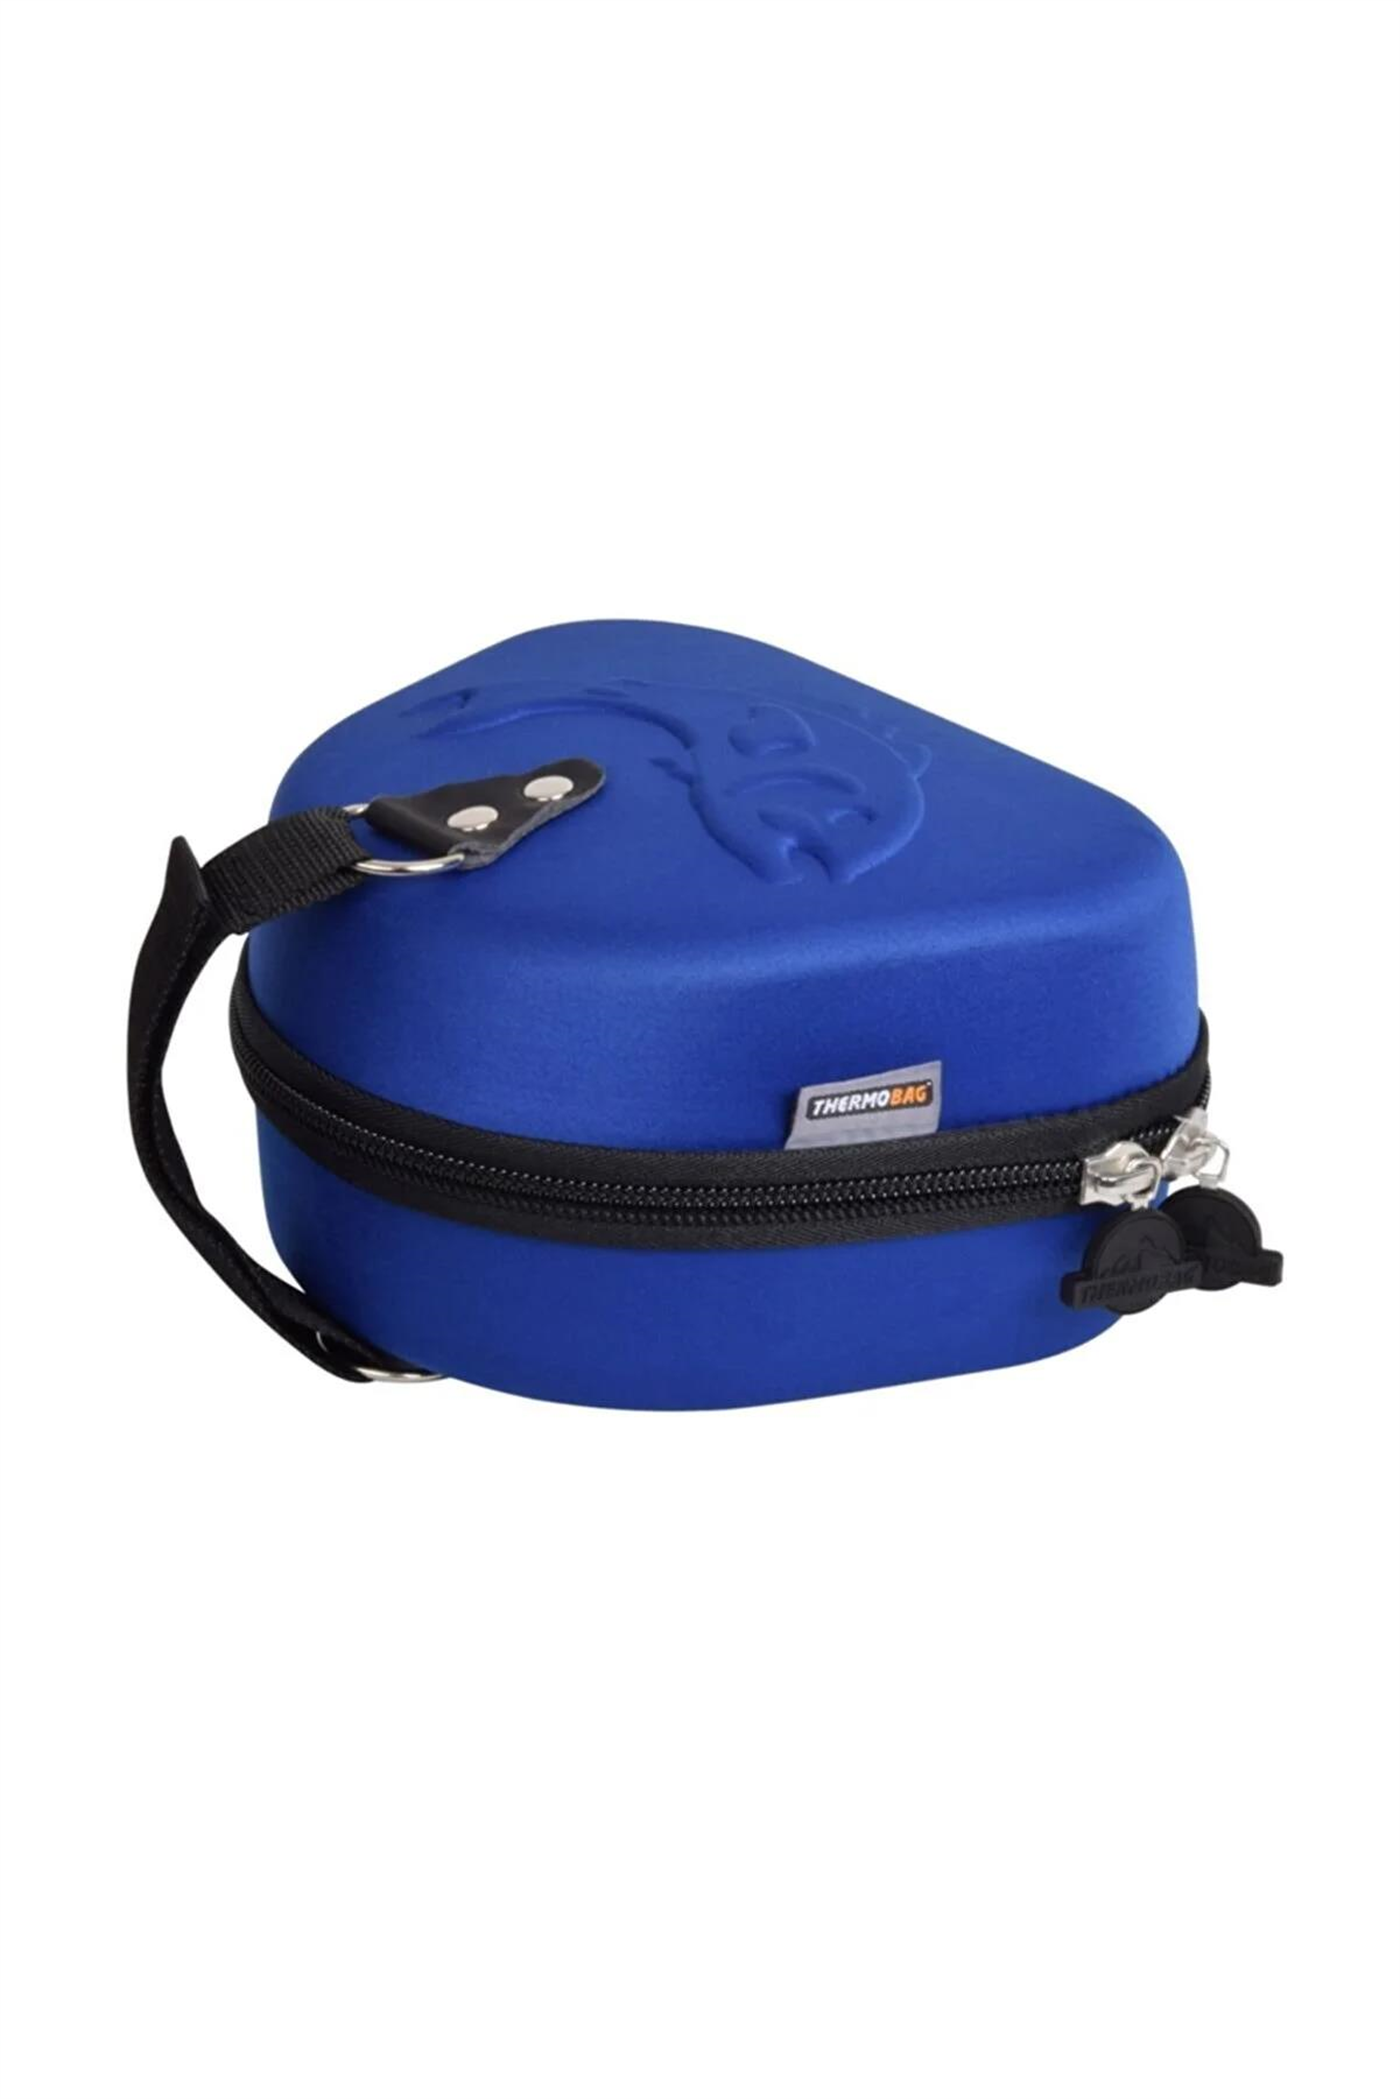 BOLORAMO Olta makarası saklama çantası, kolay kurulur Baitcasting rulo  örtüsü, polyester, açık havada balık tutmak için (mavi) : :  Spor ve Outdoor